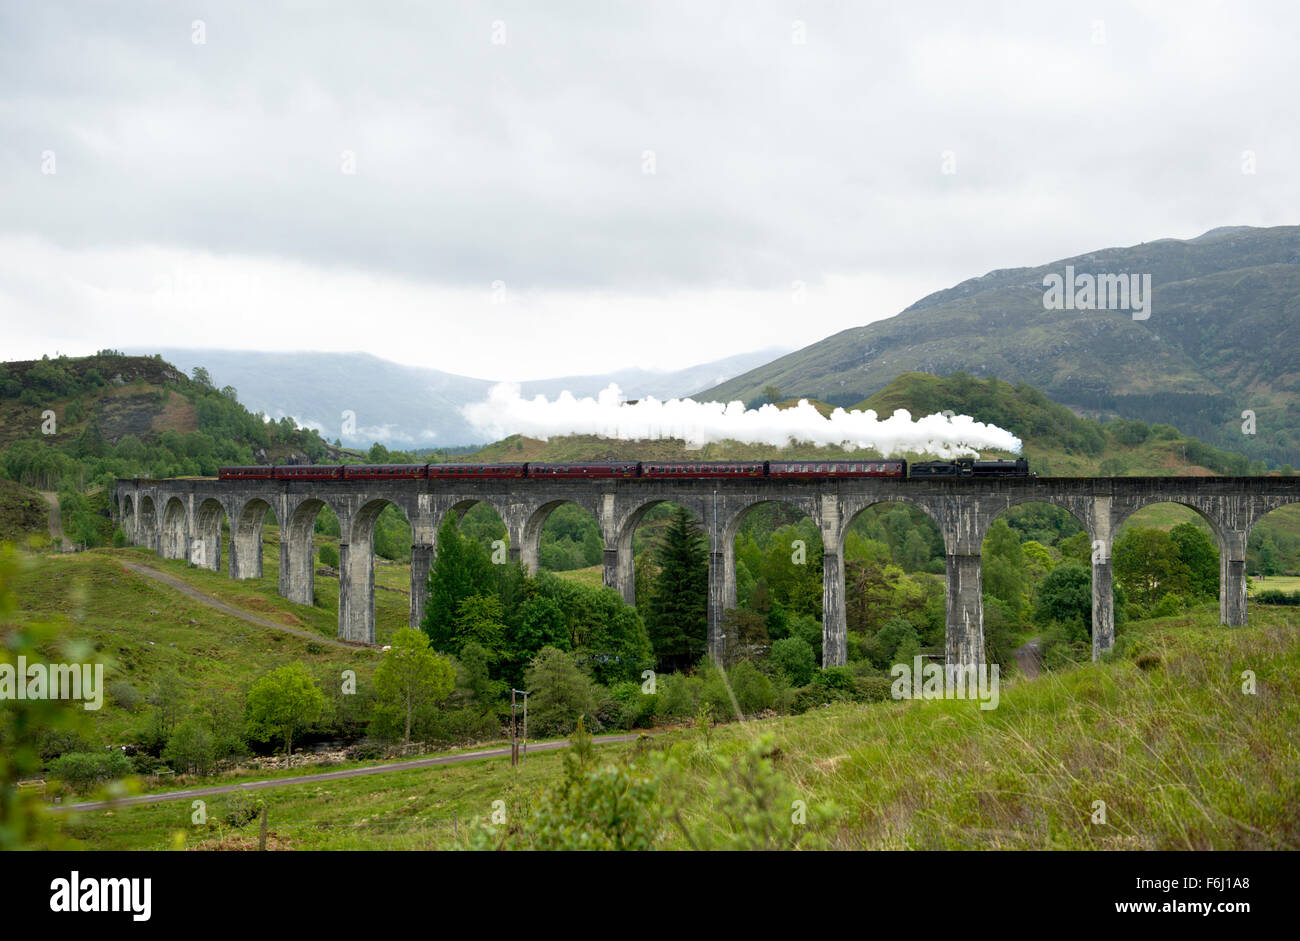 Viaducto de Glenfinnan en las Highlands de Escocia. Los 21 arcos del viaducto fue construido por Robert McAlpine entre 1897 y 1901 Foto de stock